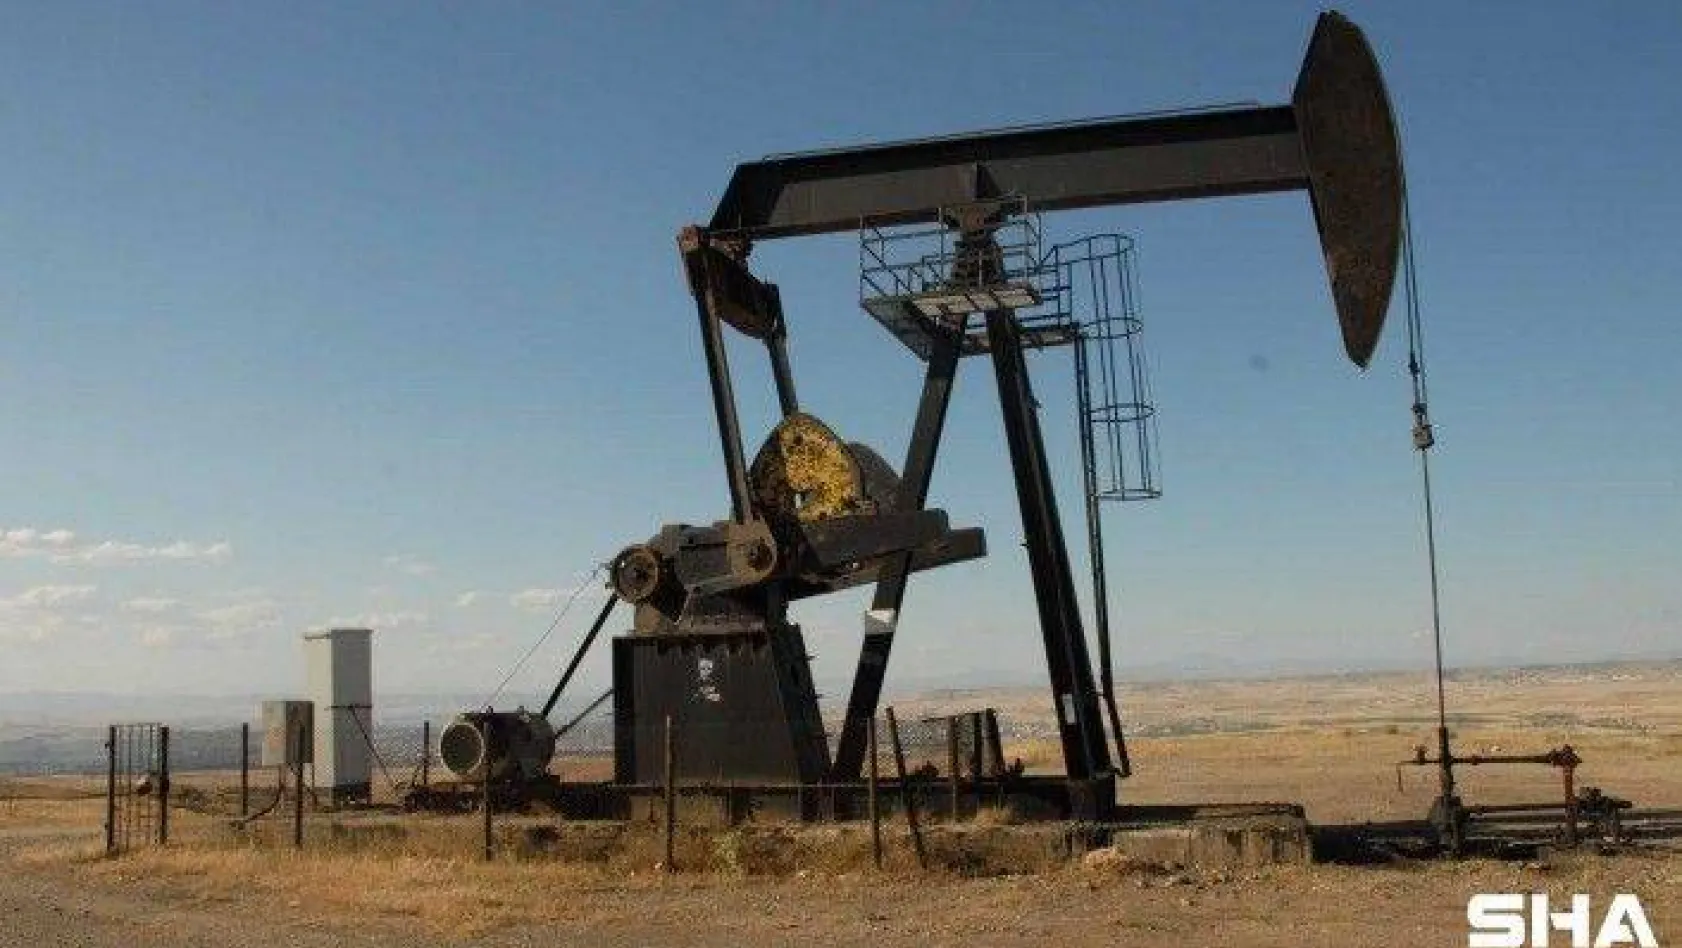 Brent petrol, son 3 yılın en yüksek seviyesinde